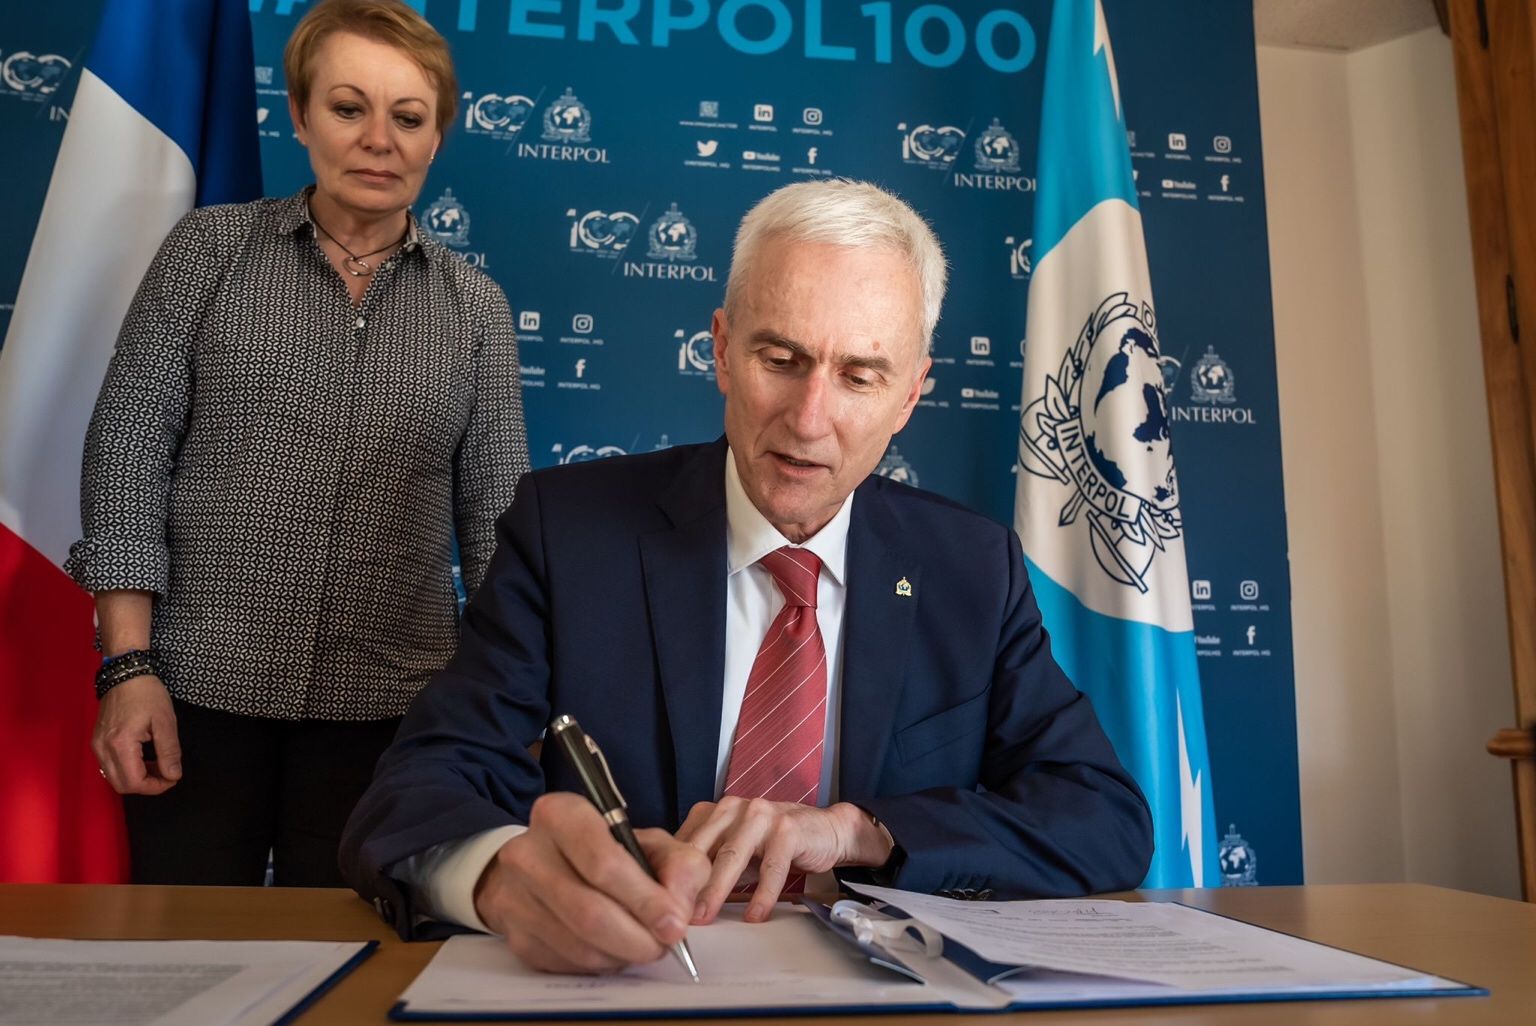 Jocurile Olimpice din 2024: INTERPOL a semnat un acord cu Franța pentru a consolida cooperarea polițienească